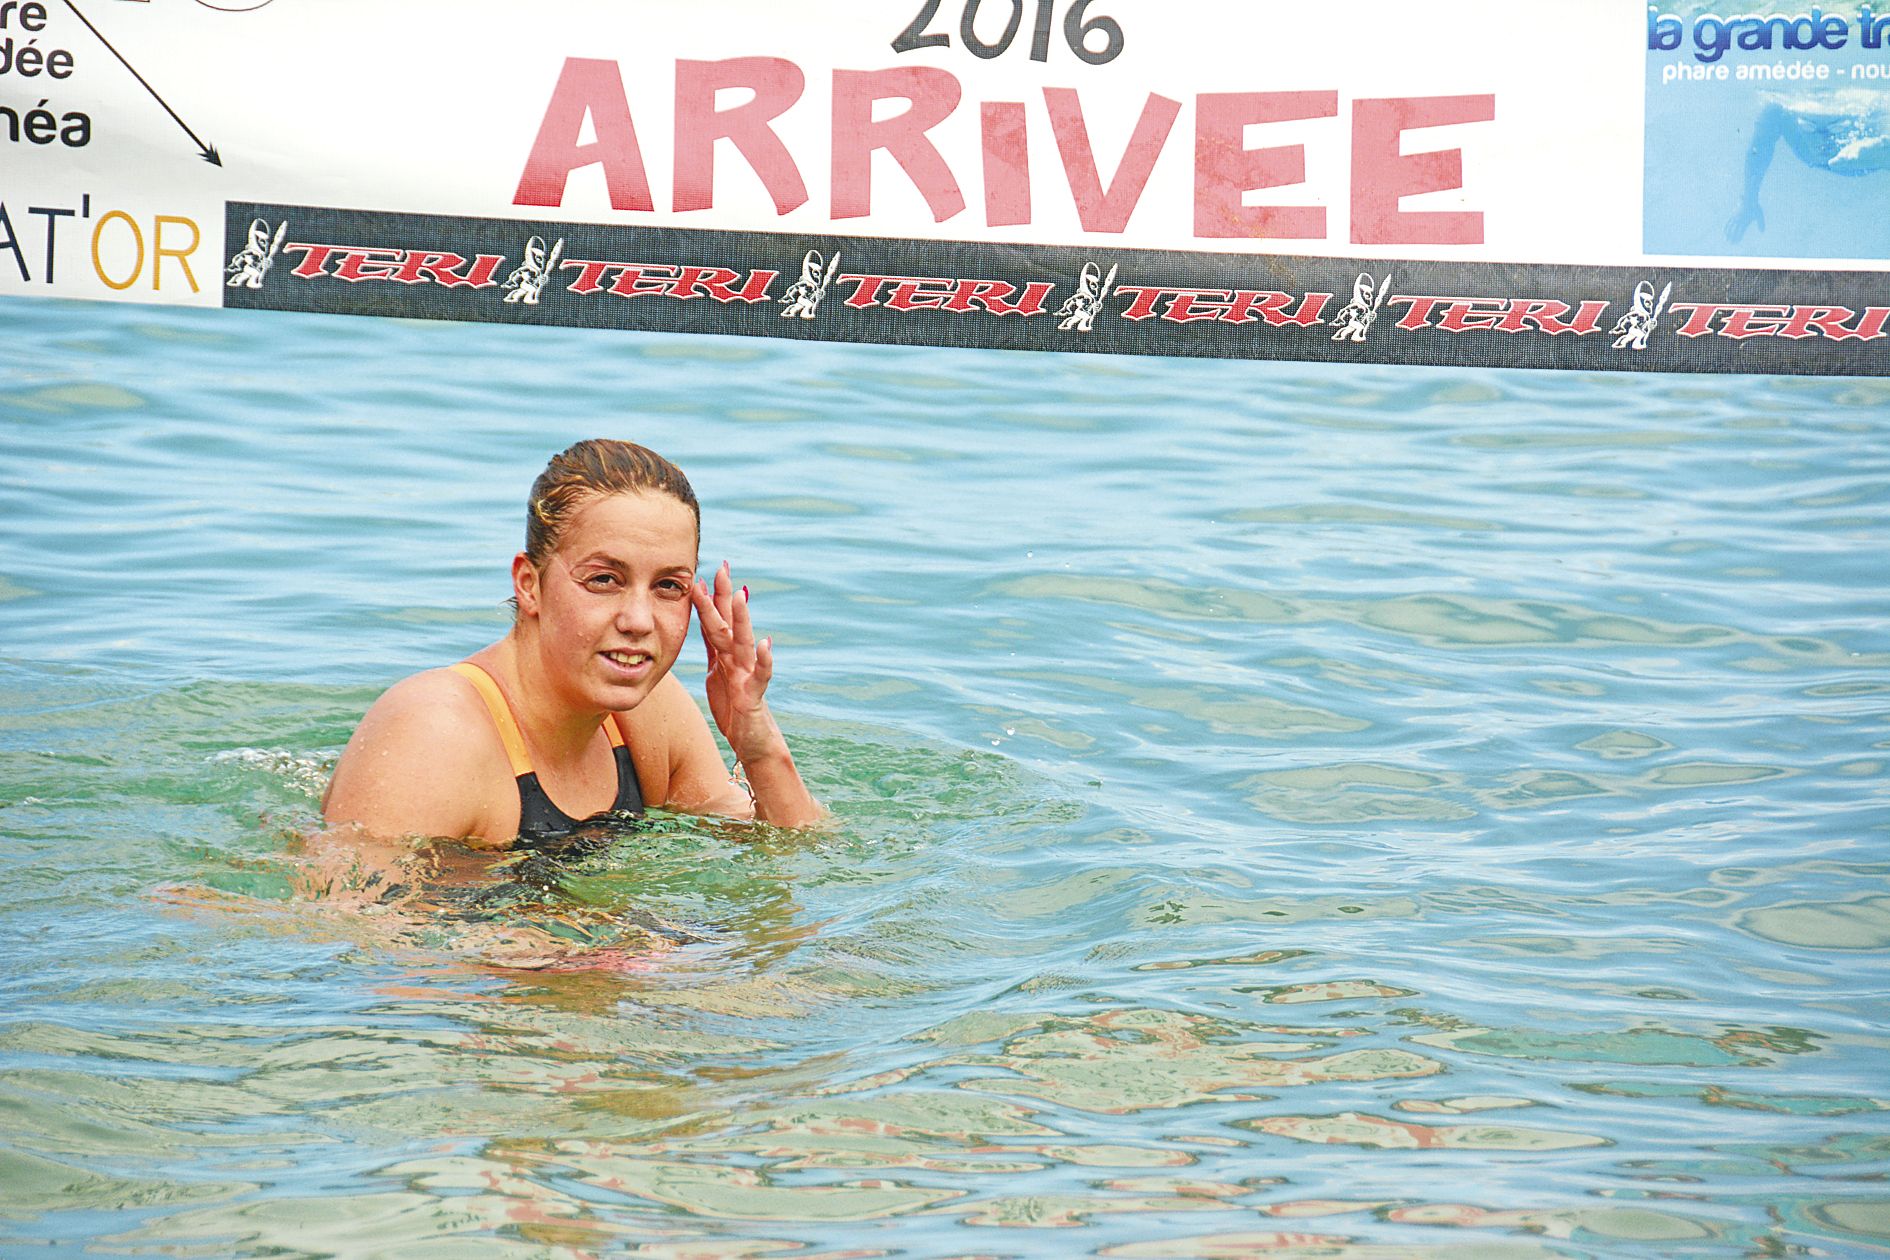 Le début de l’année 2016 marqué par sa nette victoire sur la Grande Traversée du phare Amédée a peut-être marqué un tournant dans la carrière de Lara.